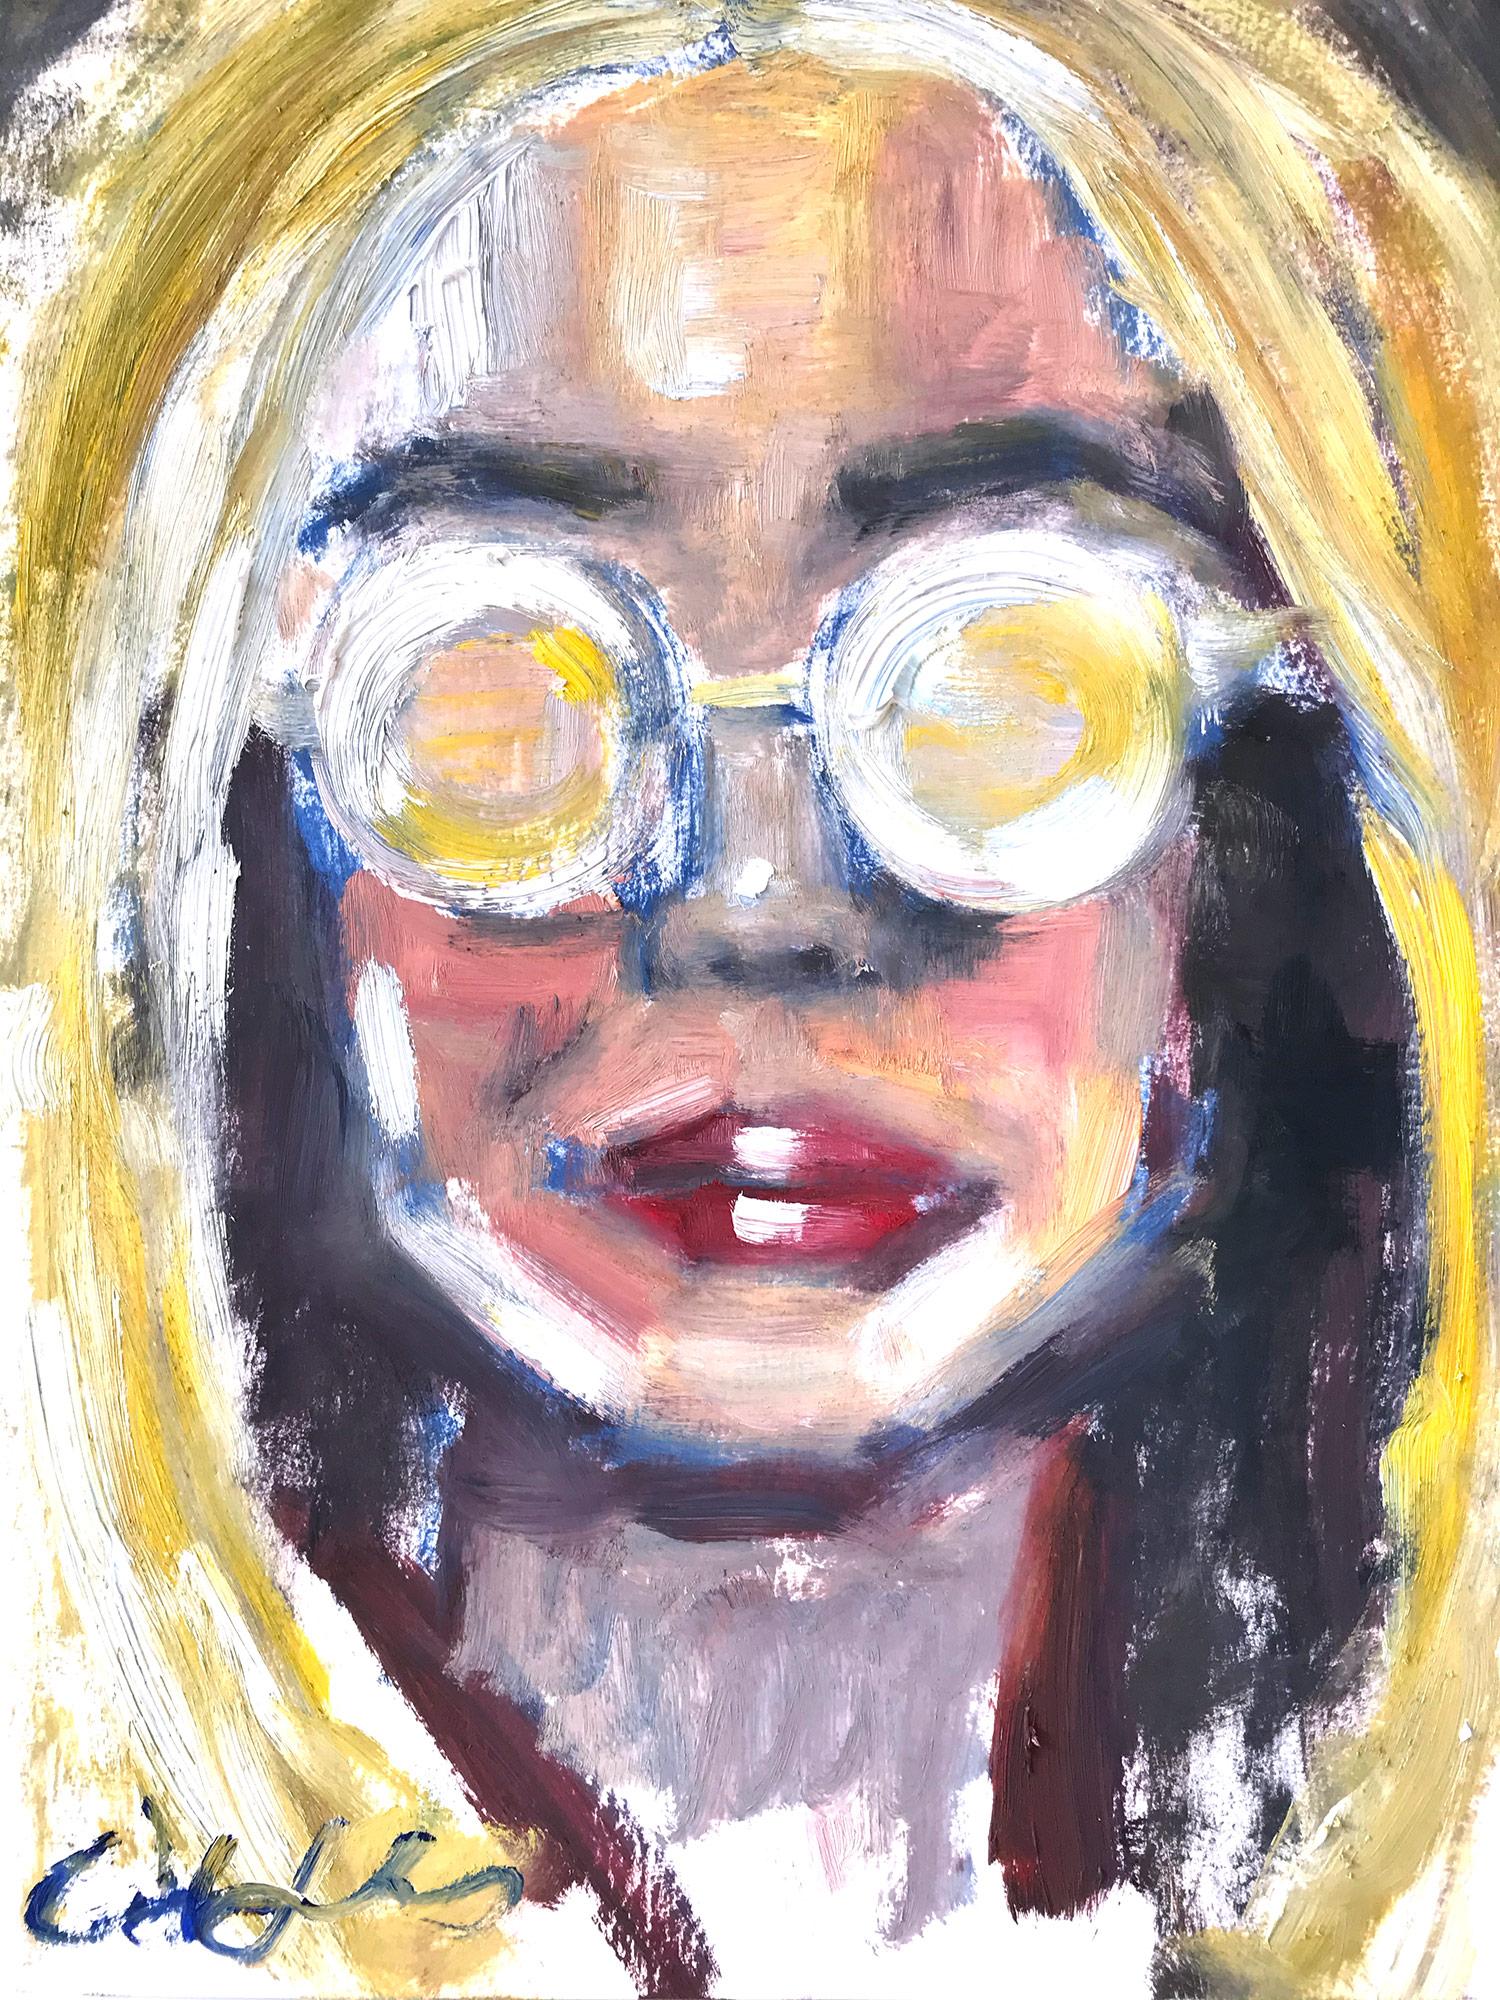 Figurative Painting Cindy Shaoul - "Summer Mood" Portrait d'une jeune fille avec des lunettes de soleil Peinture à l'huile sur papier